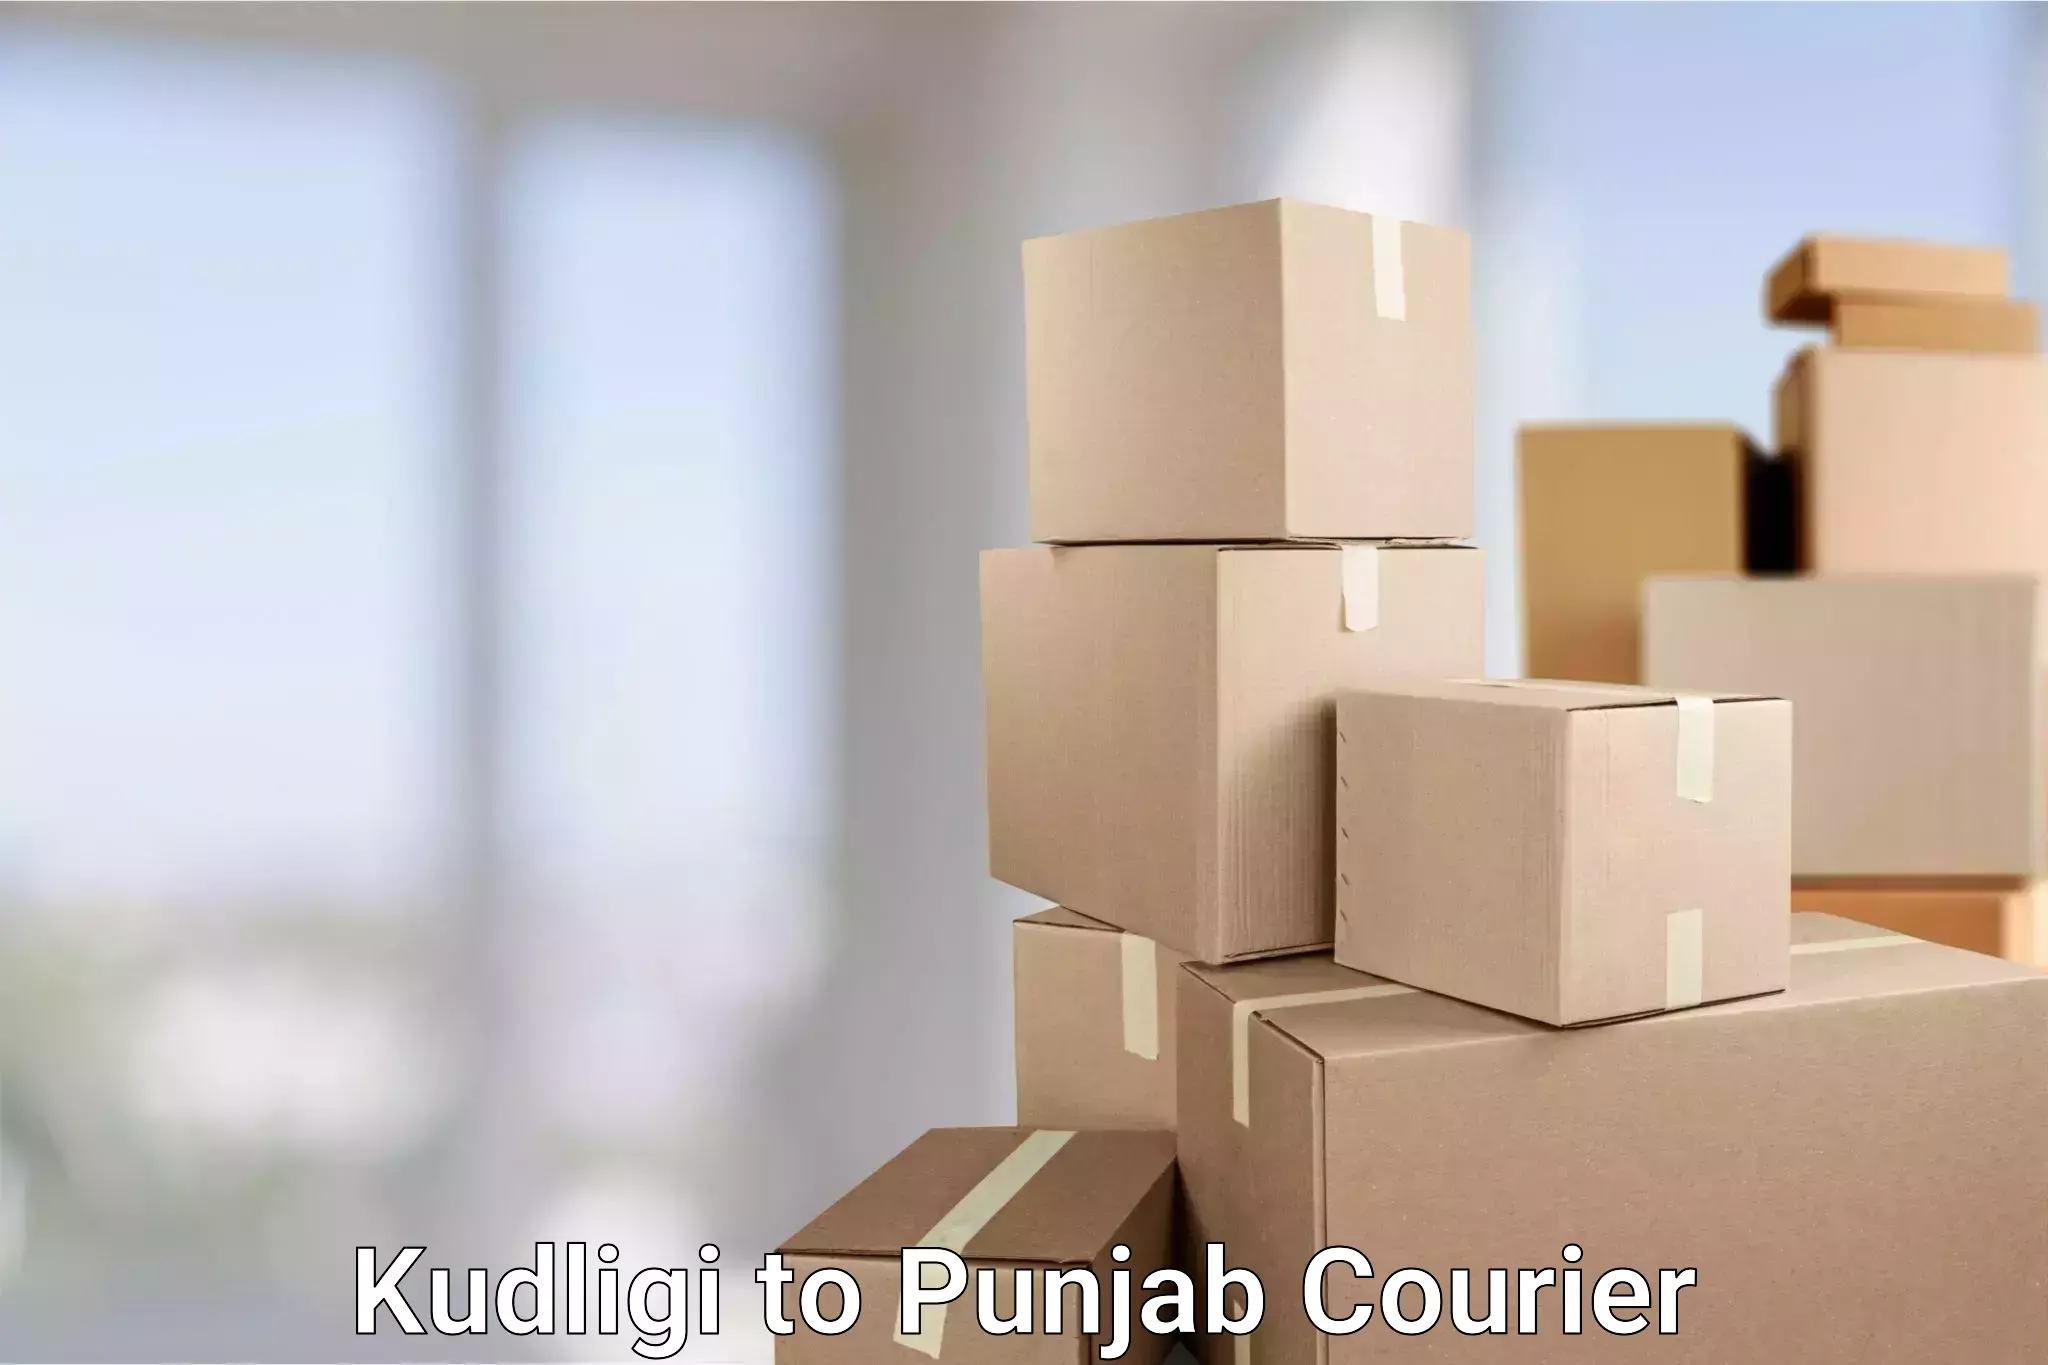 Automated parcel services Kudligi to Punjab